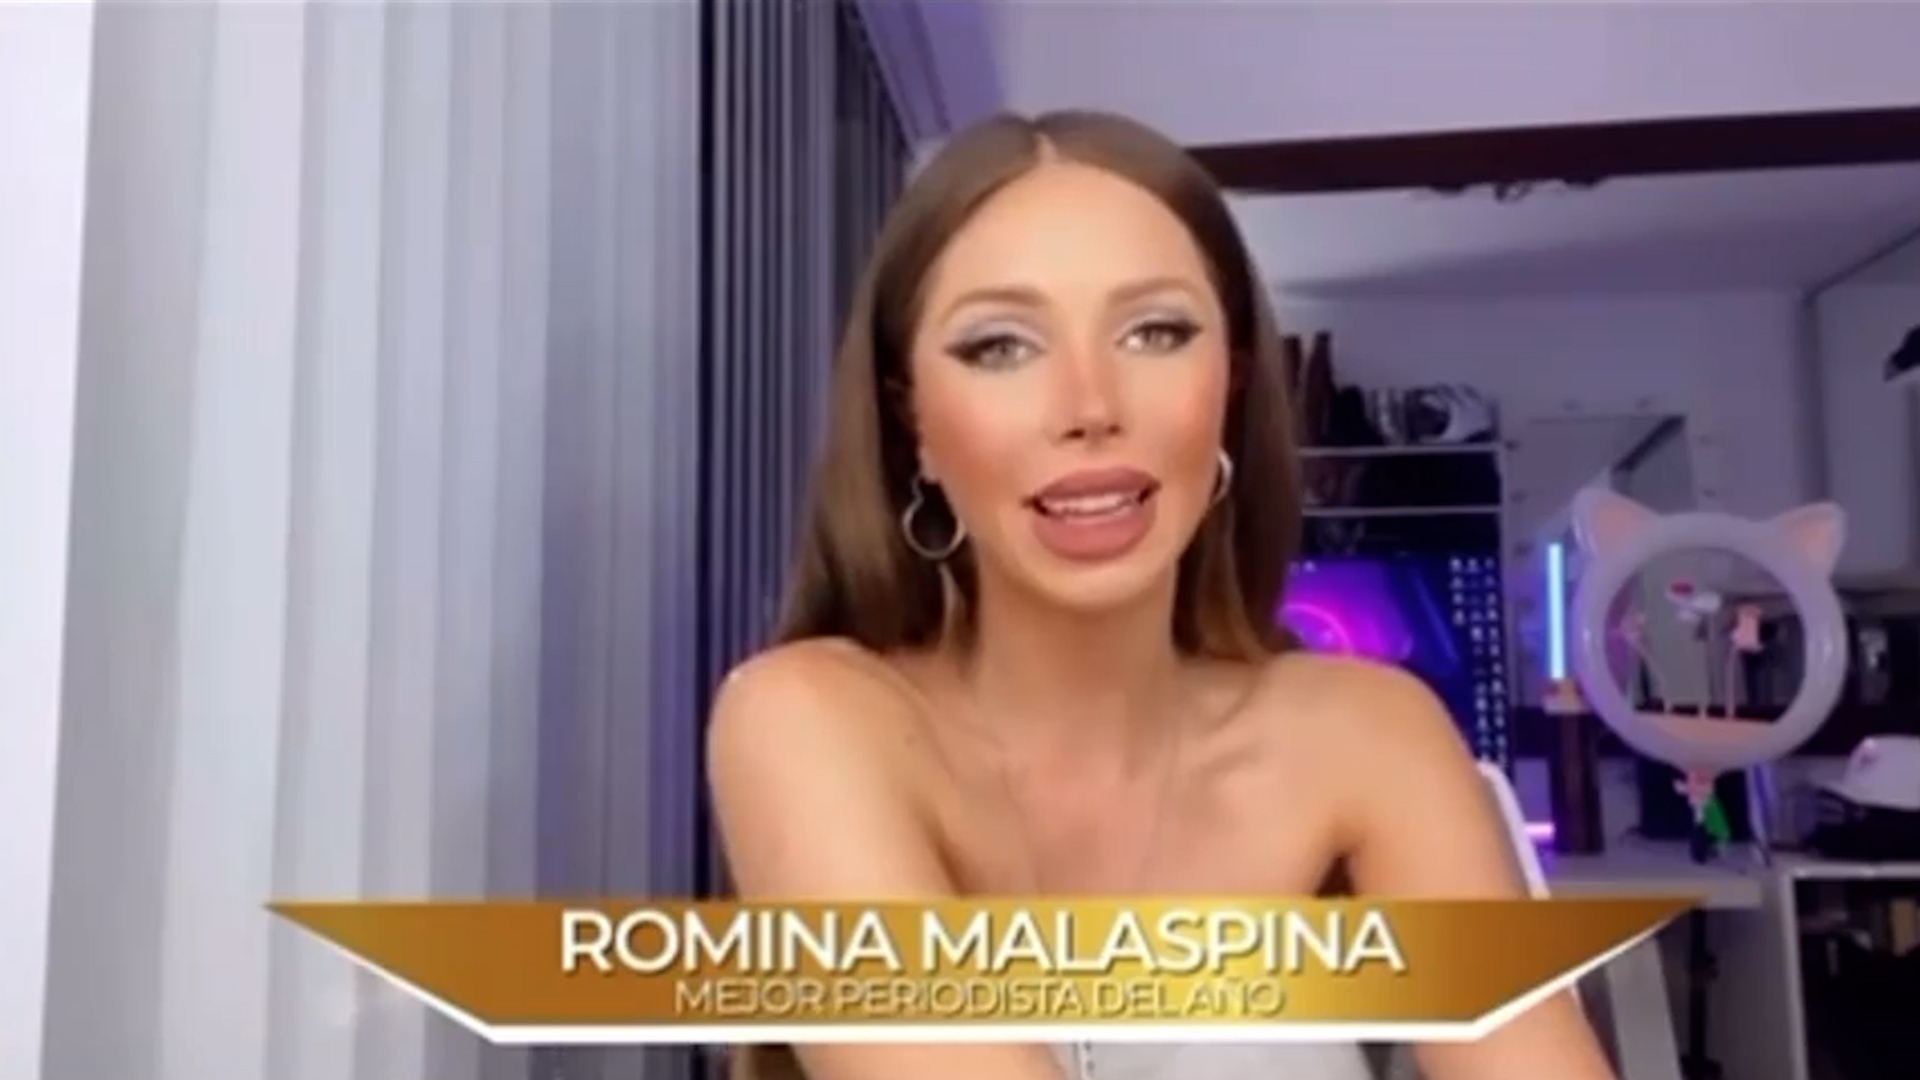 Romina Malaspina  ganó un premio como Mejor Periodista del Año: “¡No me lo puedo creer!”